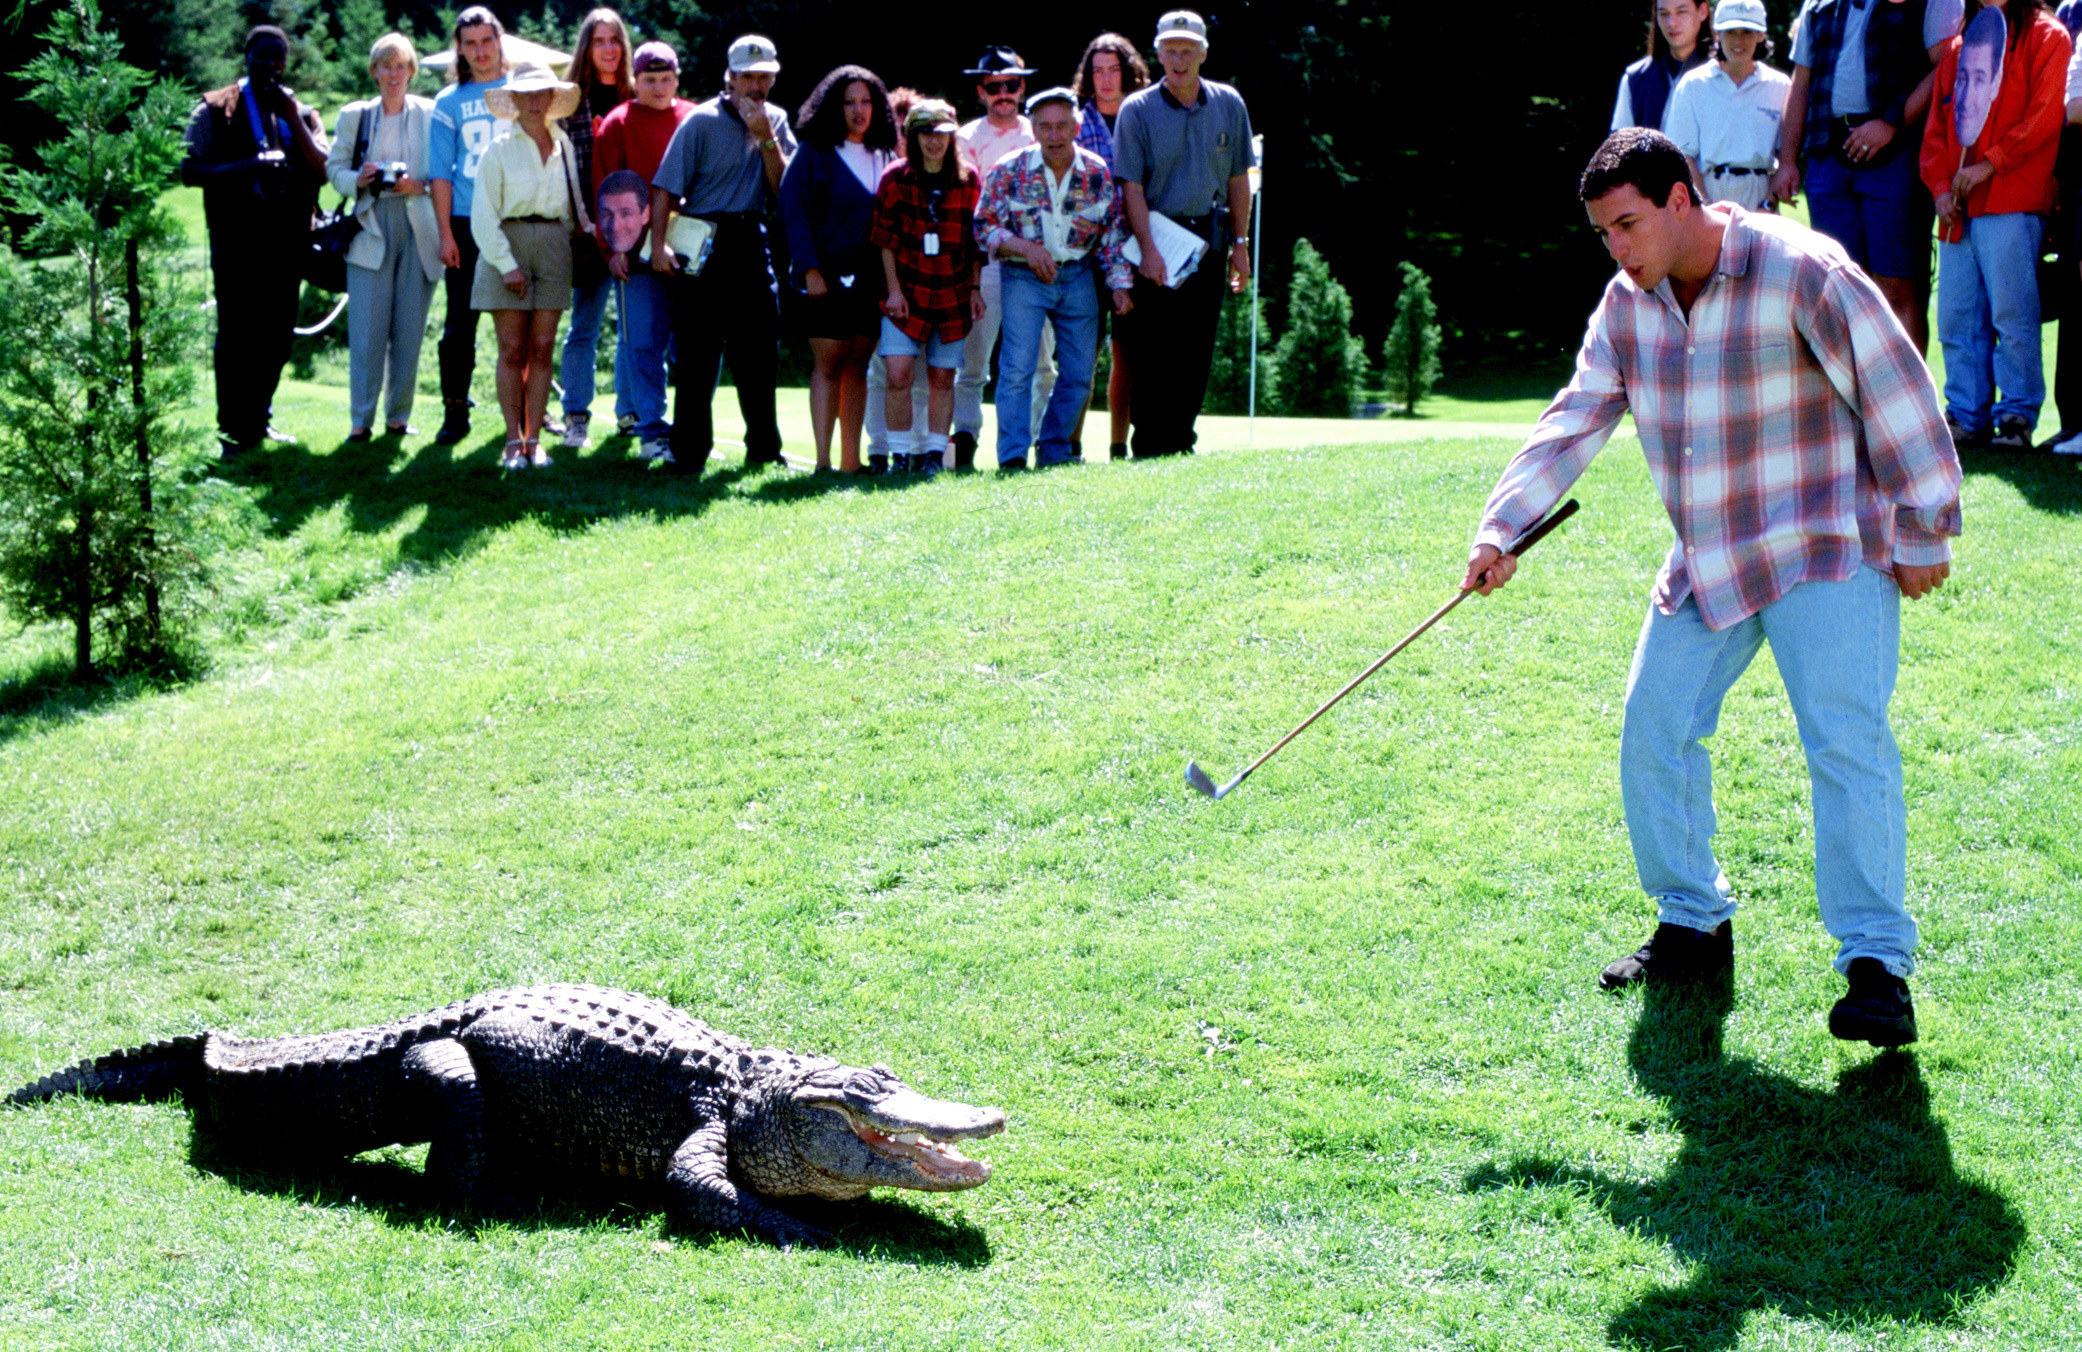 Adam Sandler aims his golf club at an alligator